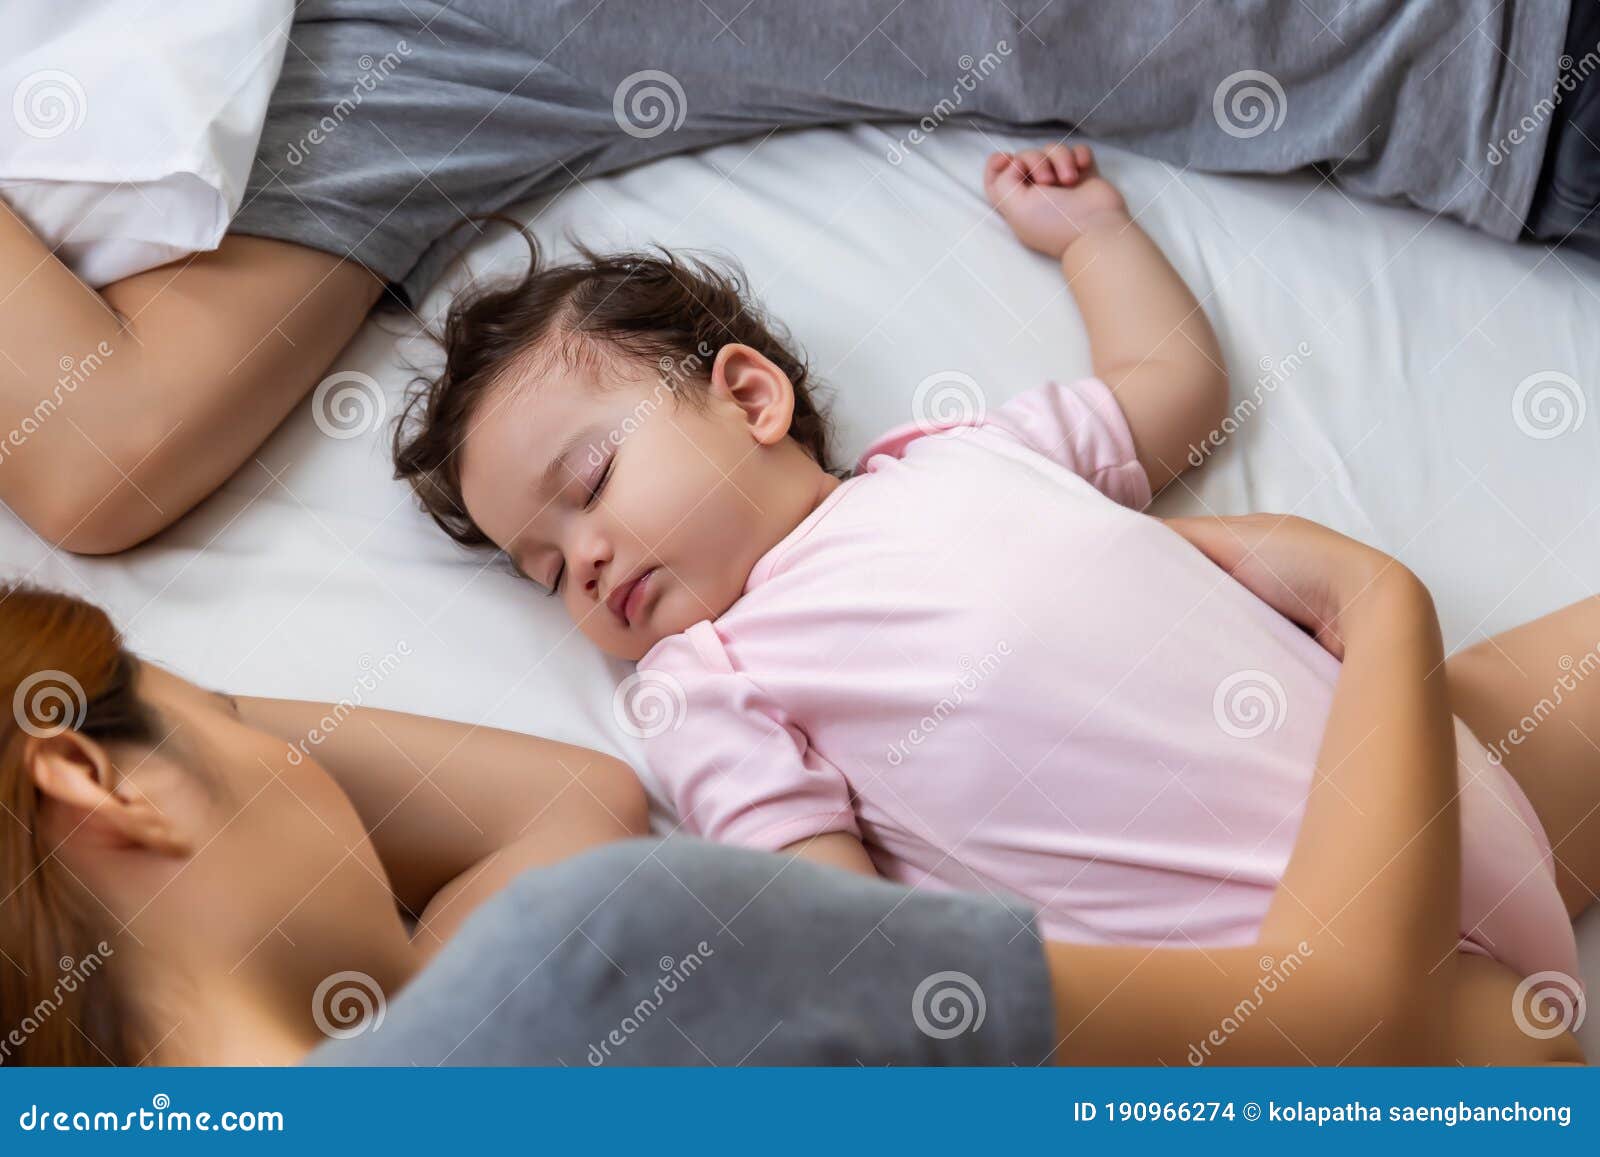 Внутрь спящей матери. Спящие мать. Дети спят обнявшись. Папа обнимает маму и ребёнка и спят.